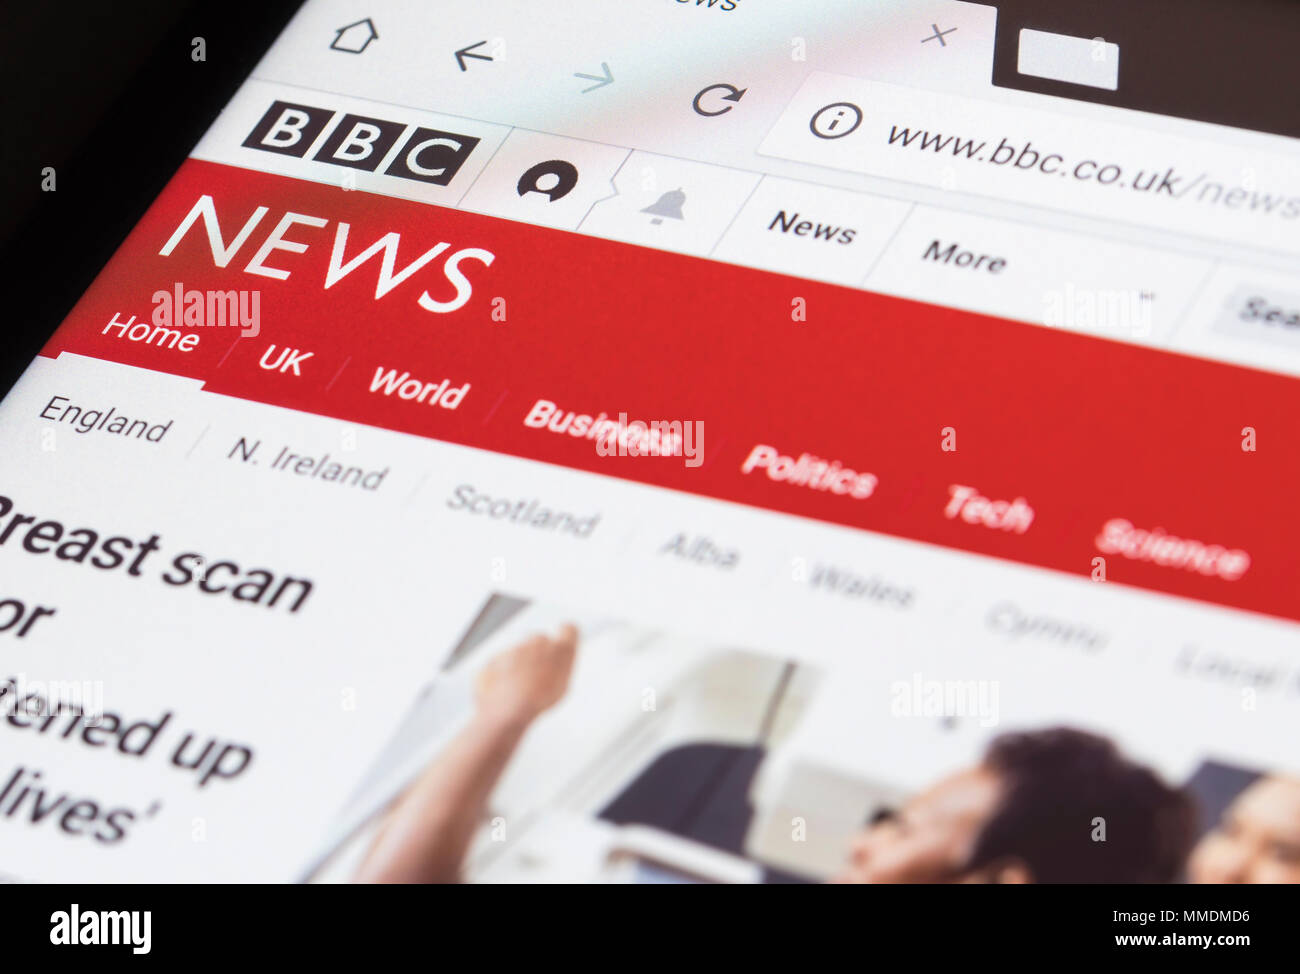 Lire le site Web de BBC News sur une tablette. Banque D'Images